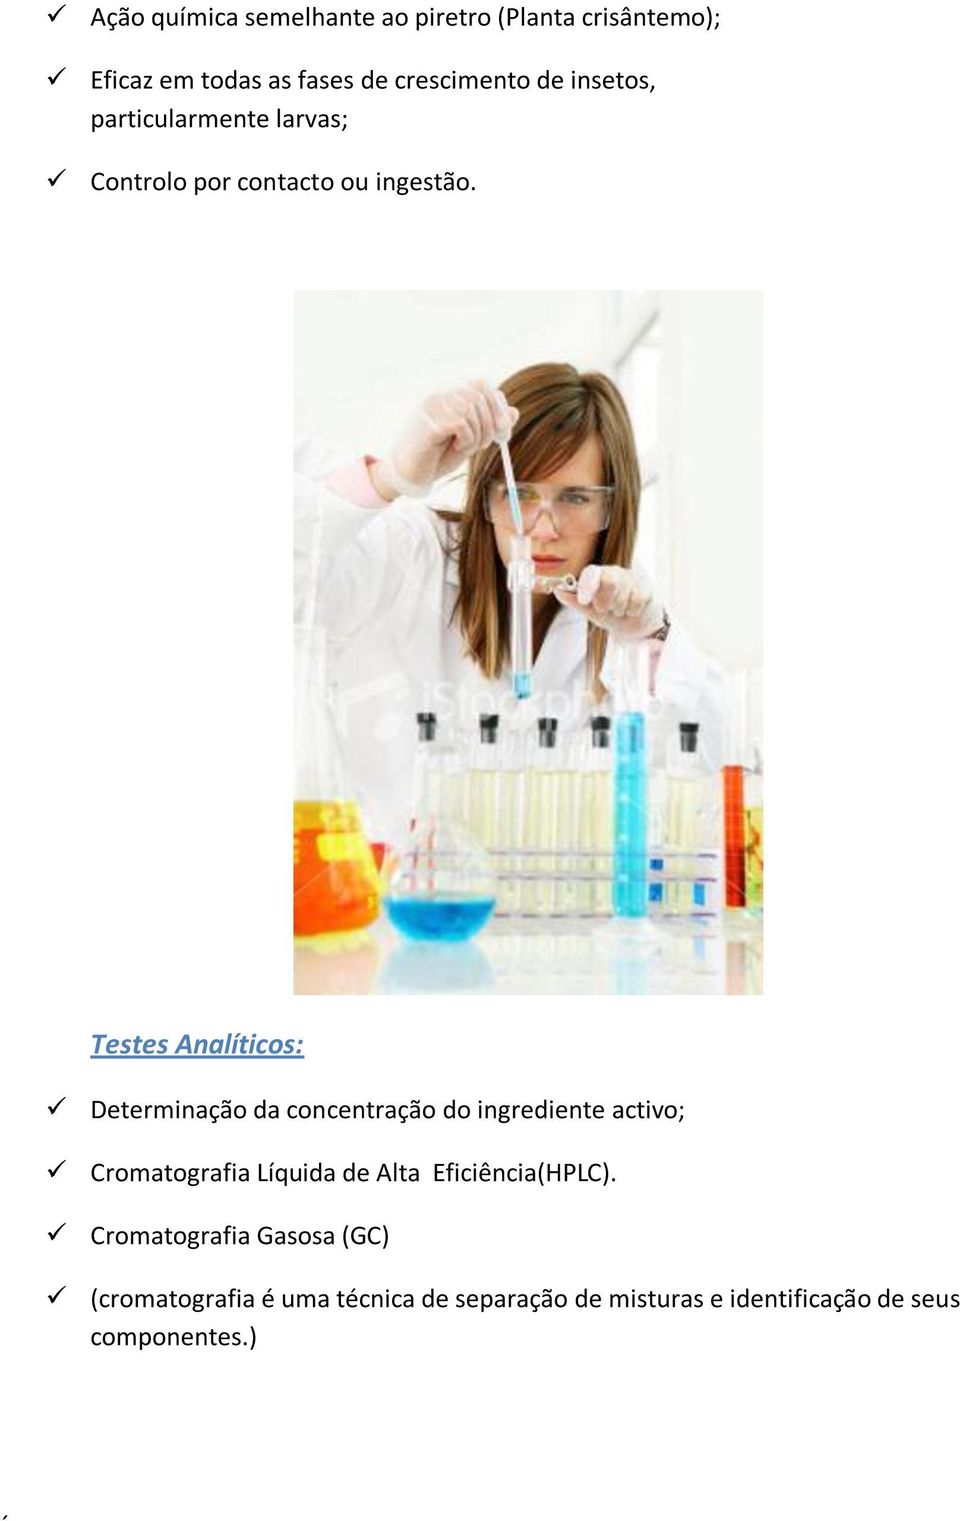 Testes Analíticos: Determinação da concentração do ingrediente activo; Cromatografia Líquida de Alta